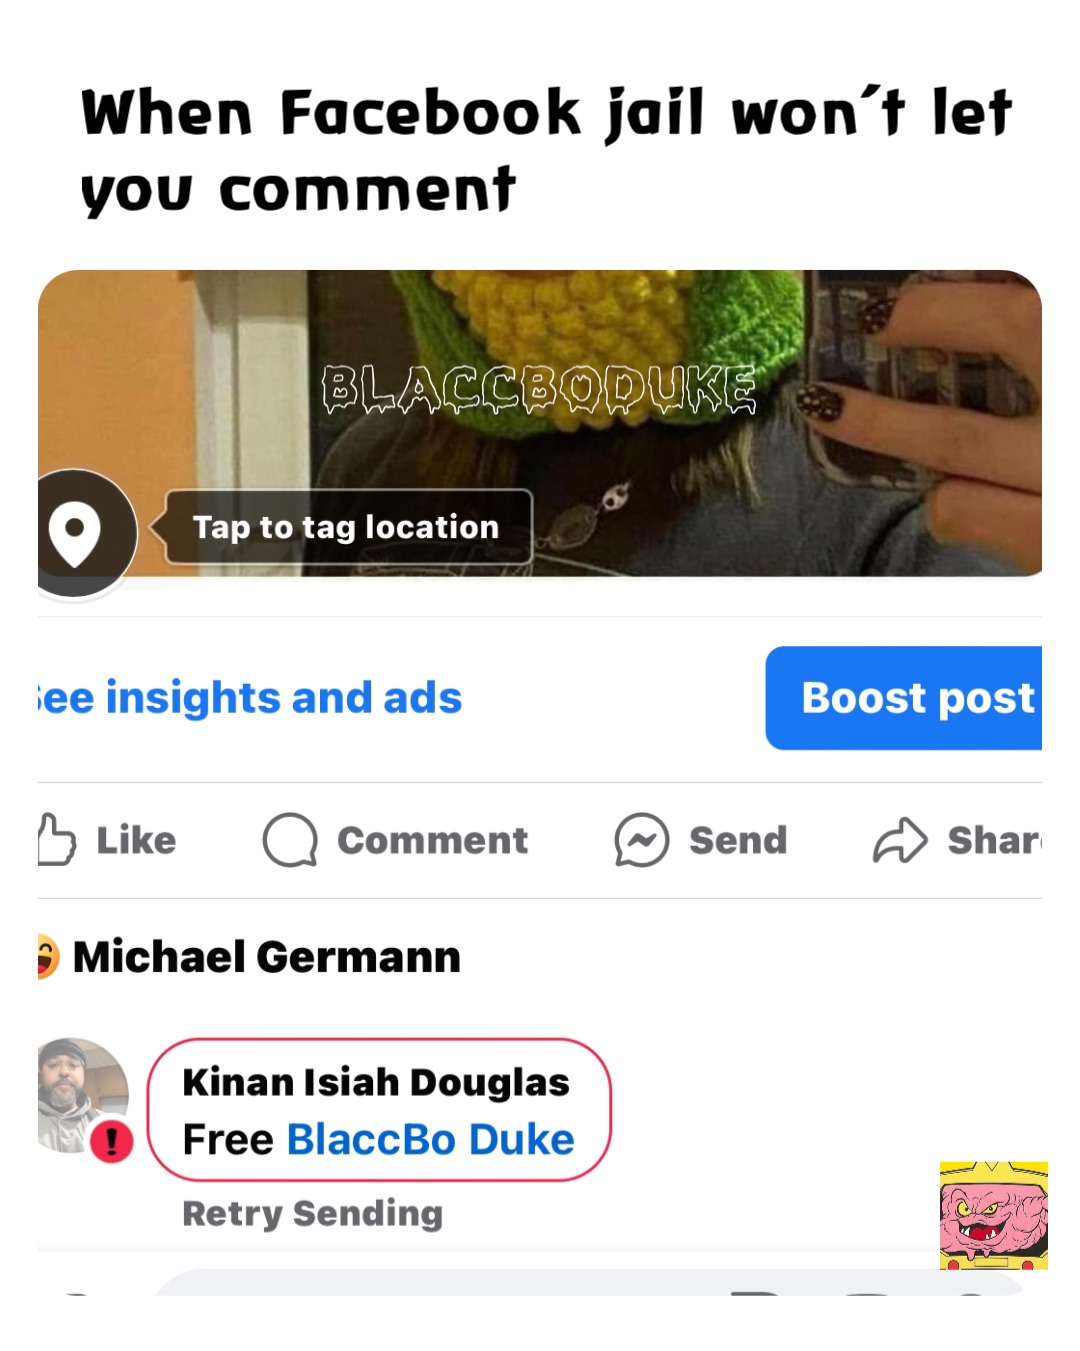 When Facebook jail won’t let you comment